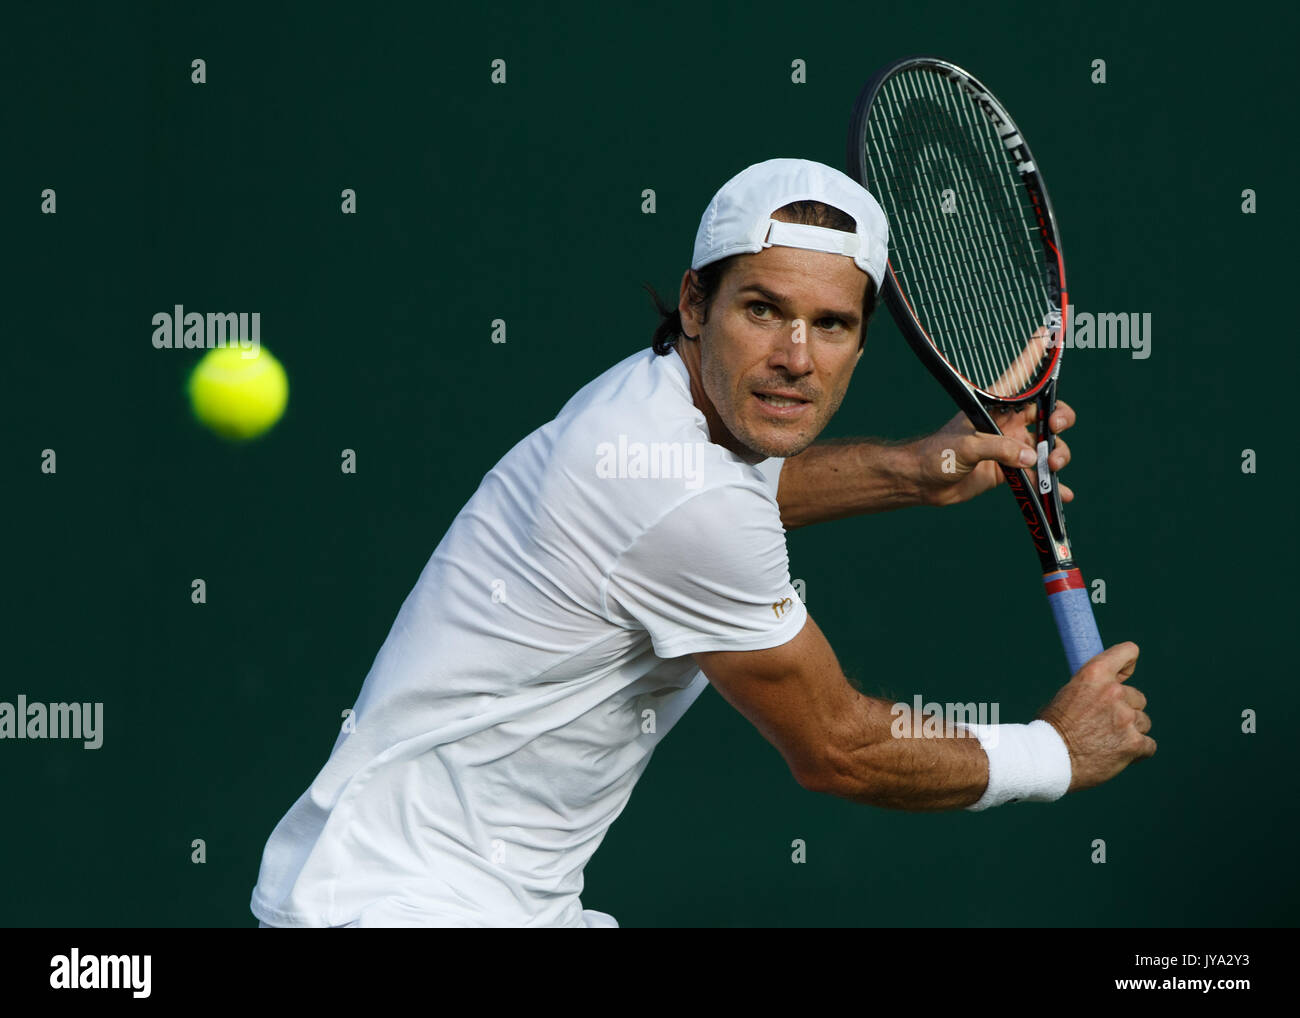 Tommy Haas en action à Wimbledon, Londres, Angleterre, Royaume-Uni. Banque D'Images